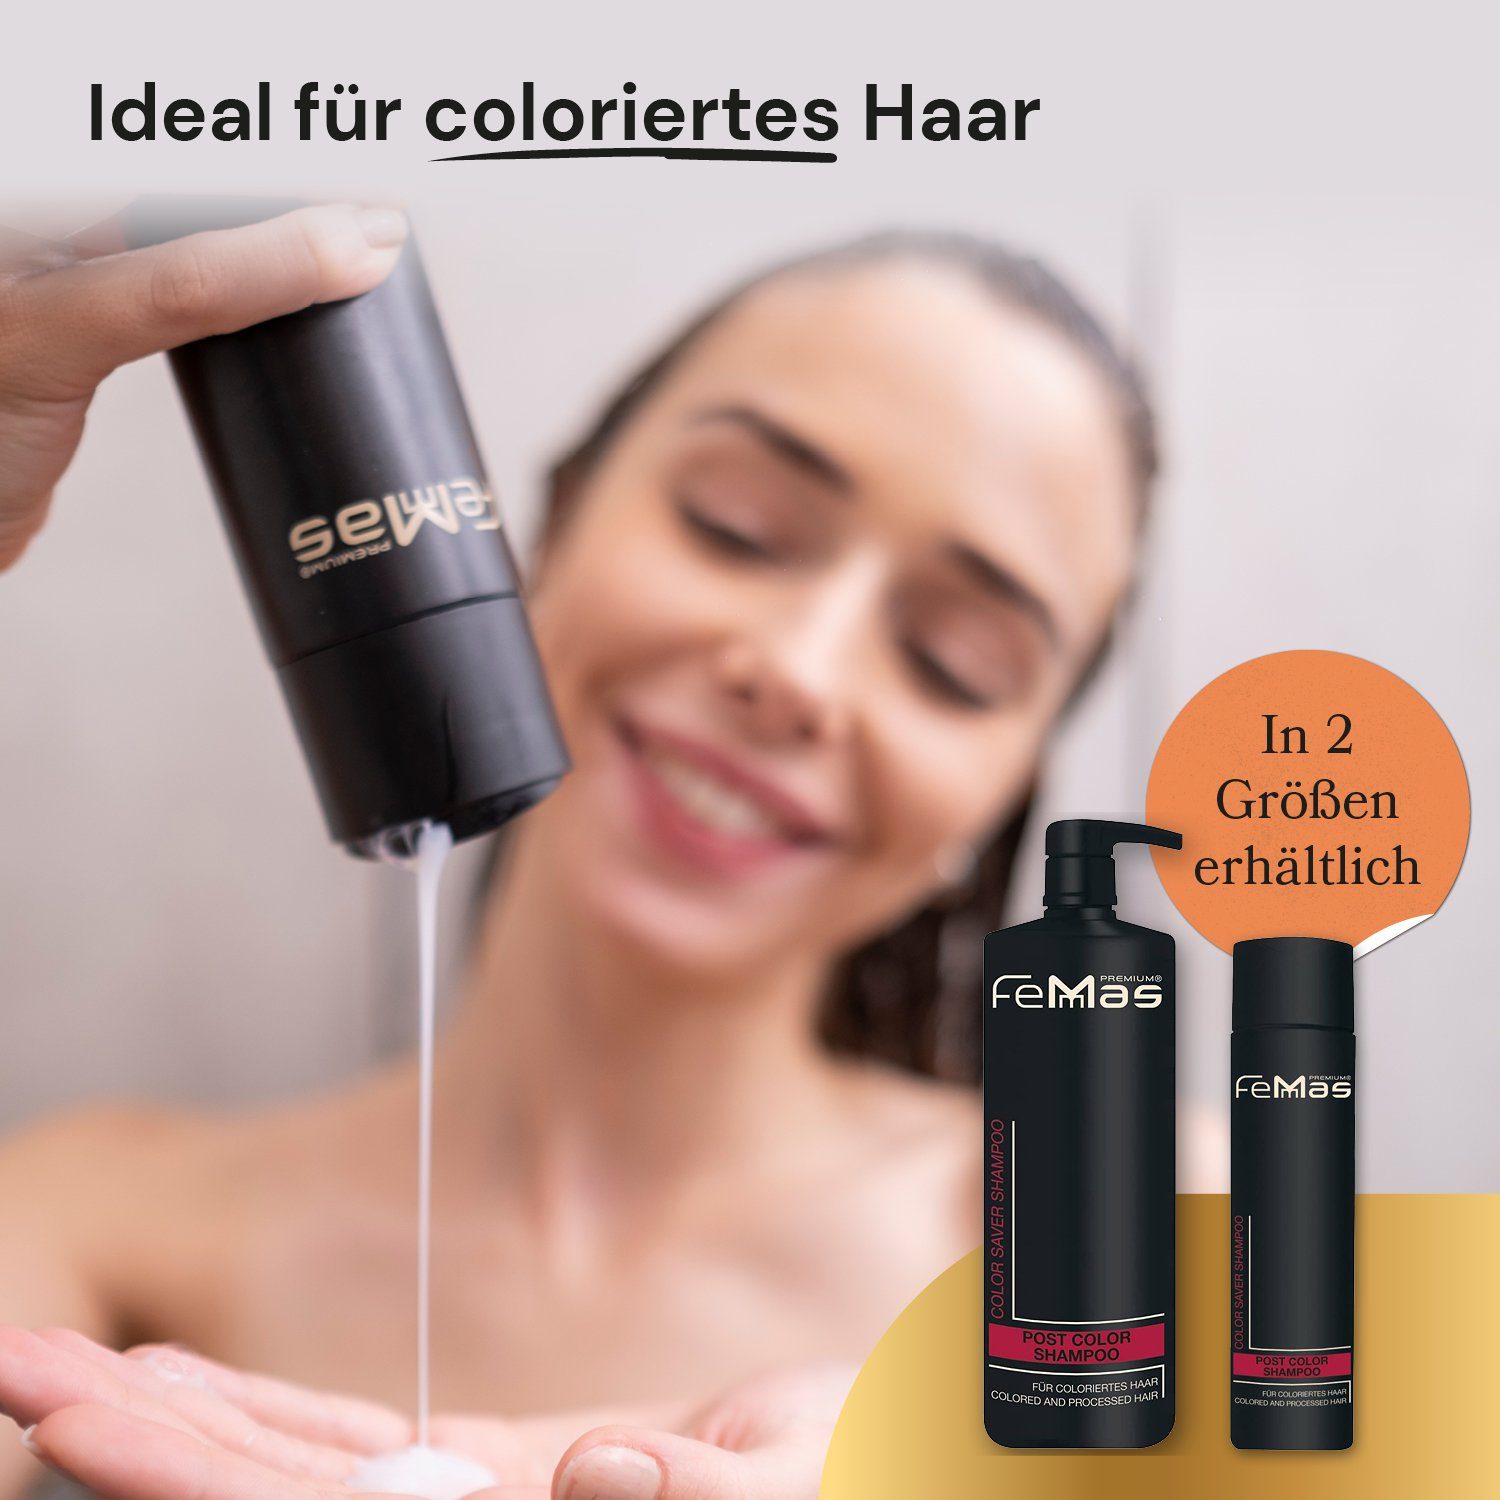 + FemMas Color 250ml Shampoo Haarpflege-Set Maske Saver Color Femmas Premium Saver 250ml